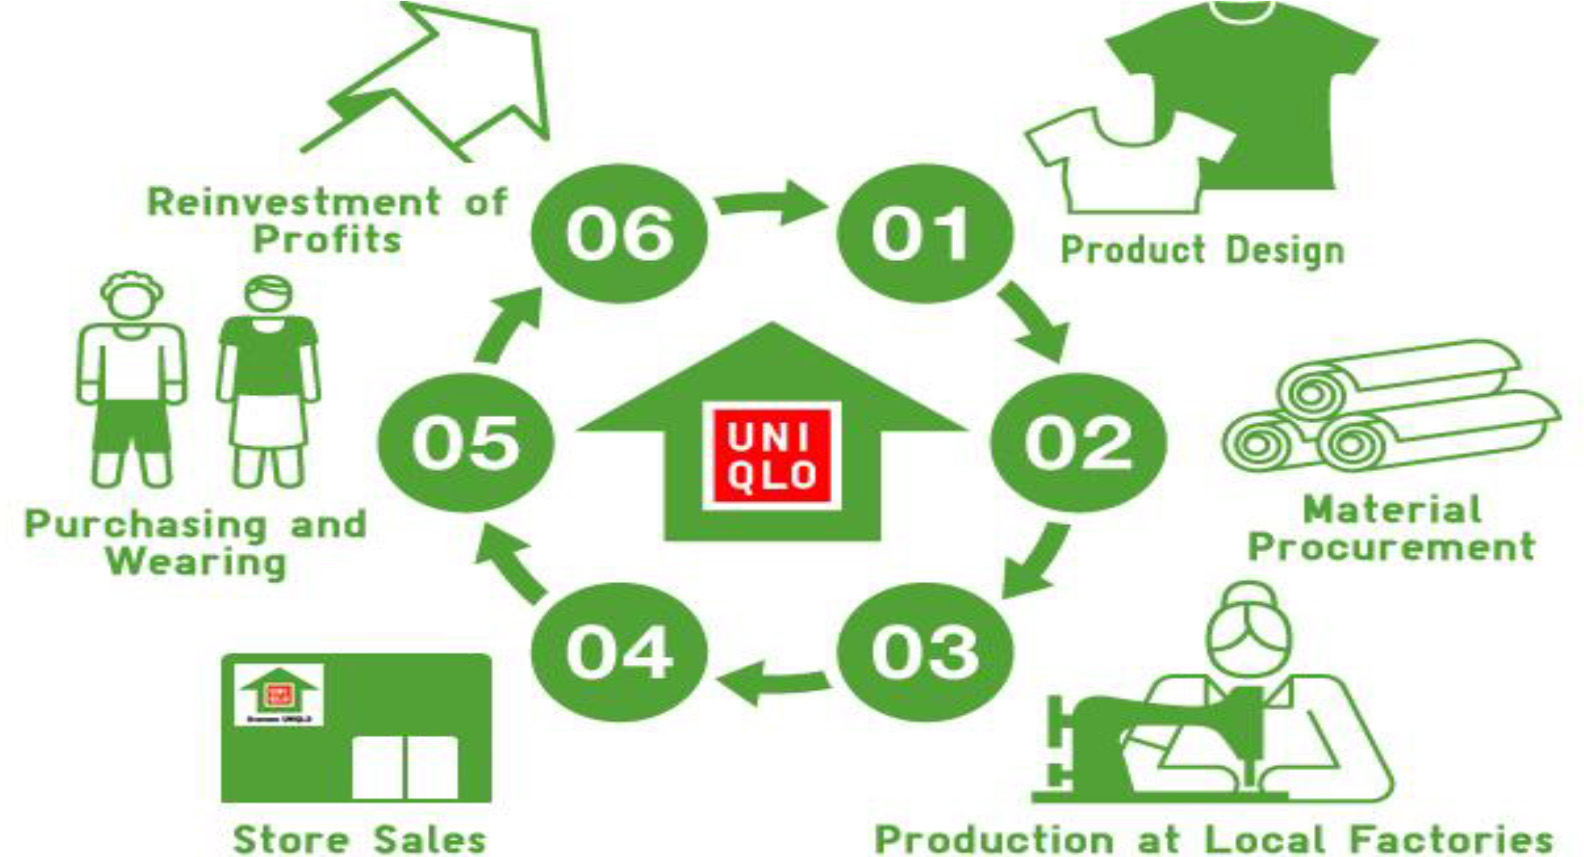 UNIQLO Business Model  FAST RETAILING CO LTD